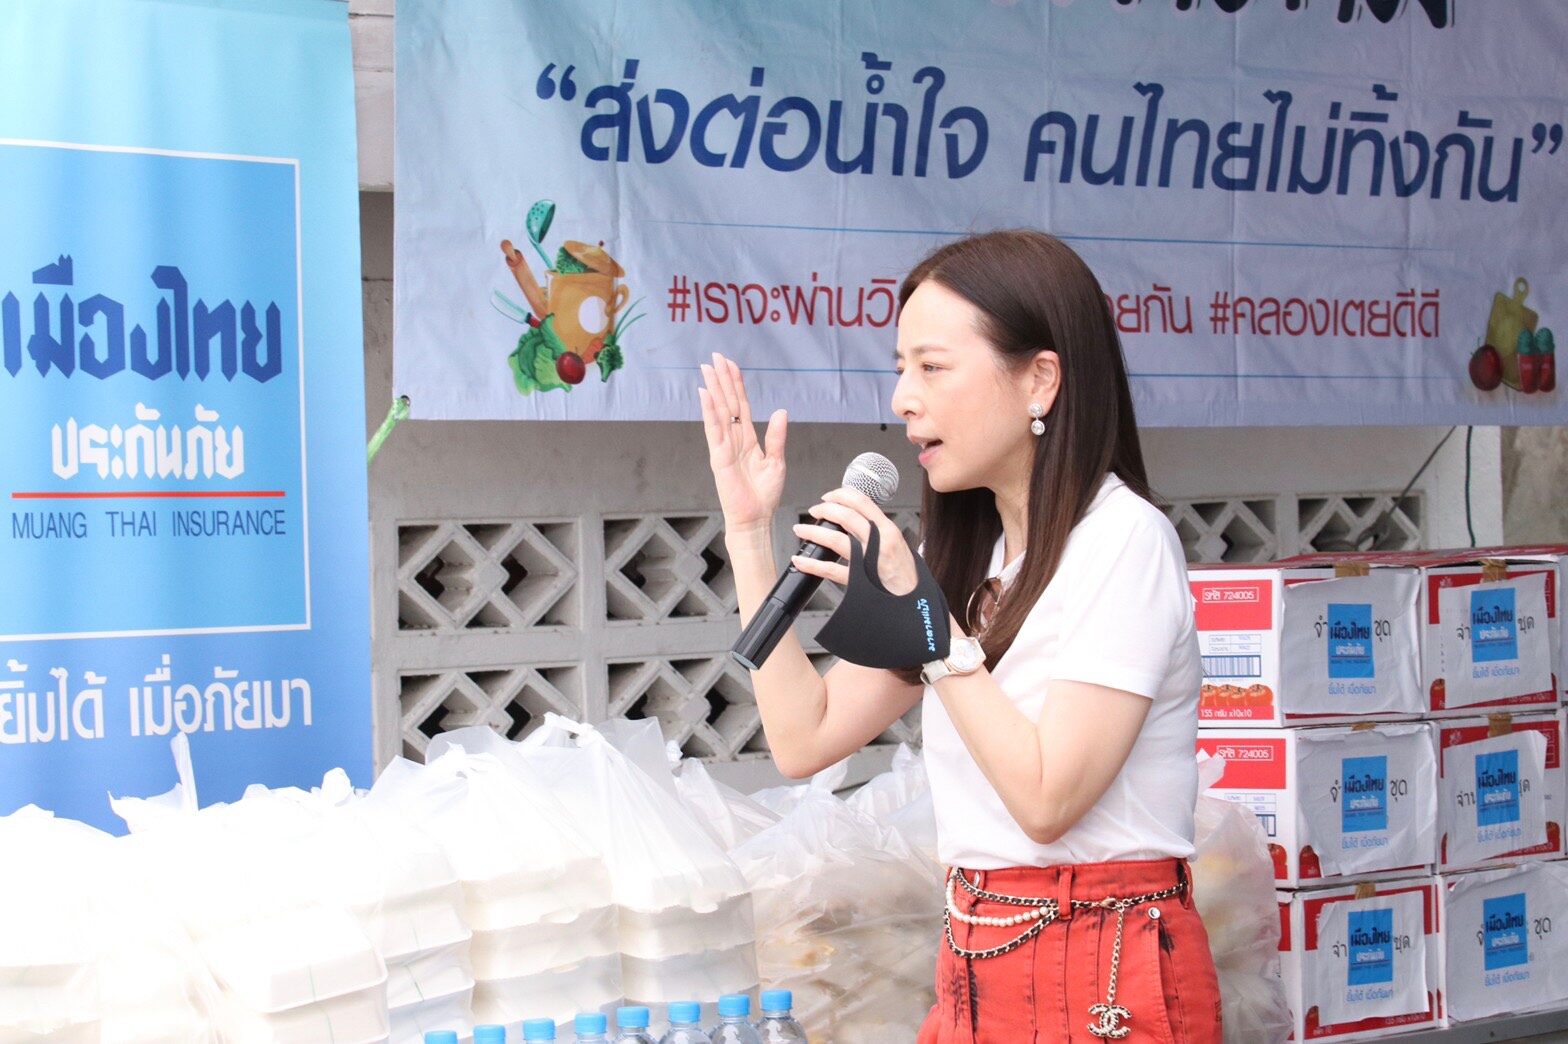 “มาดามแป้ง” นวลพรรณ ล่ำซำ กรรมการผู้จัดการและประธานเจ้าหน้าที่บริหาร บมจ.เมืองไทยประกันภัย